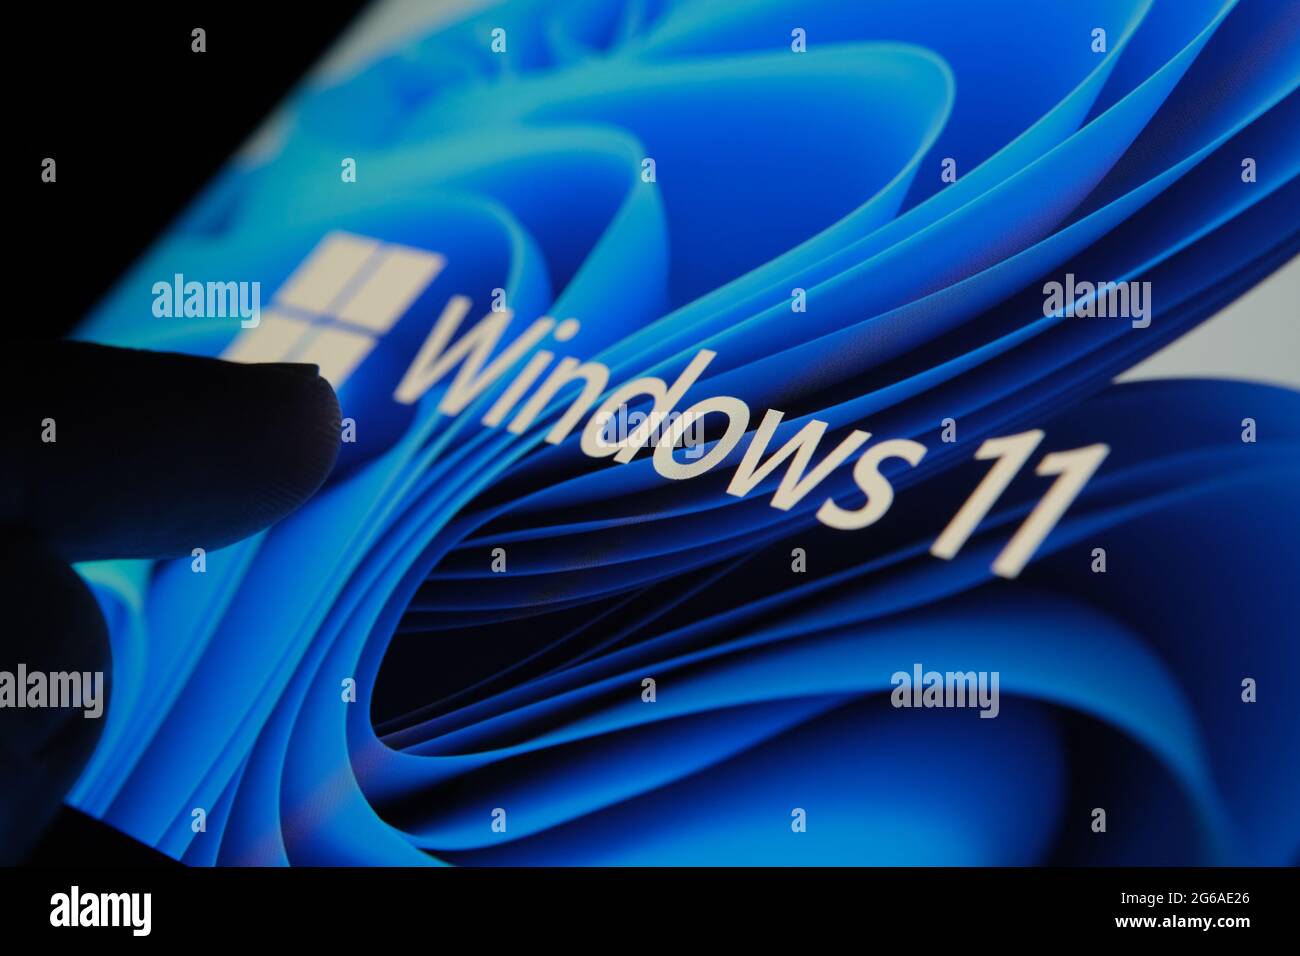 Le logo Windows 11 apparaît sur l'écran de la tablette et l'utilisateur le pointe avec le doigt. Stafford, Royaume-Uni, 1er juillet 2021 Banque D'Images